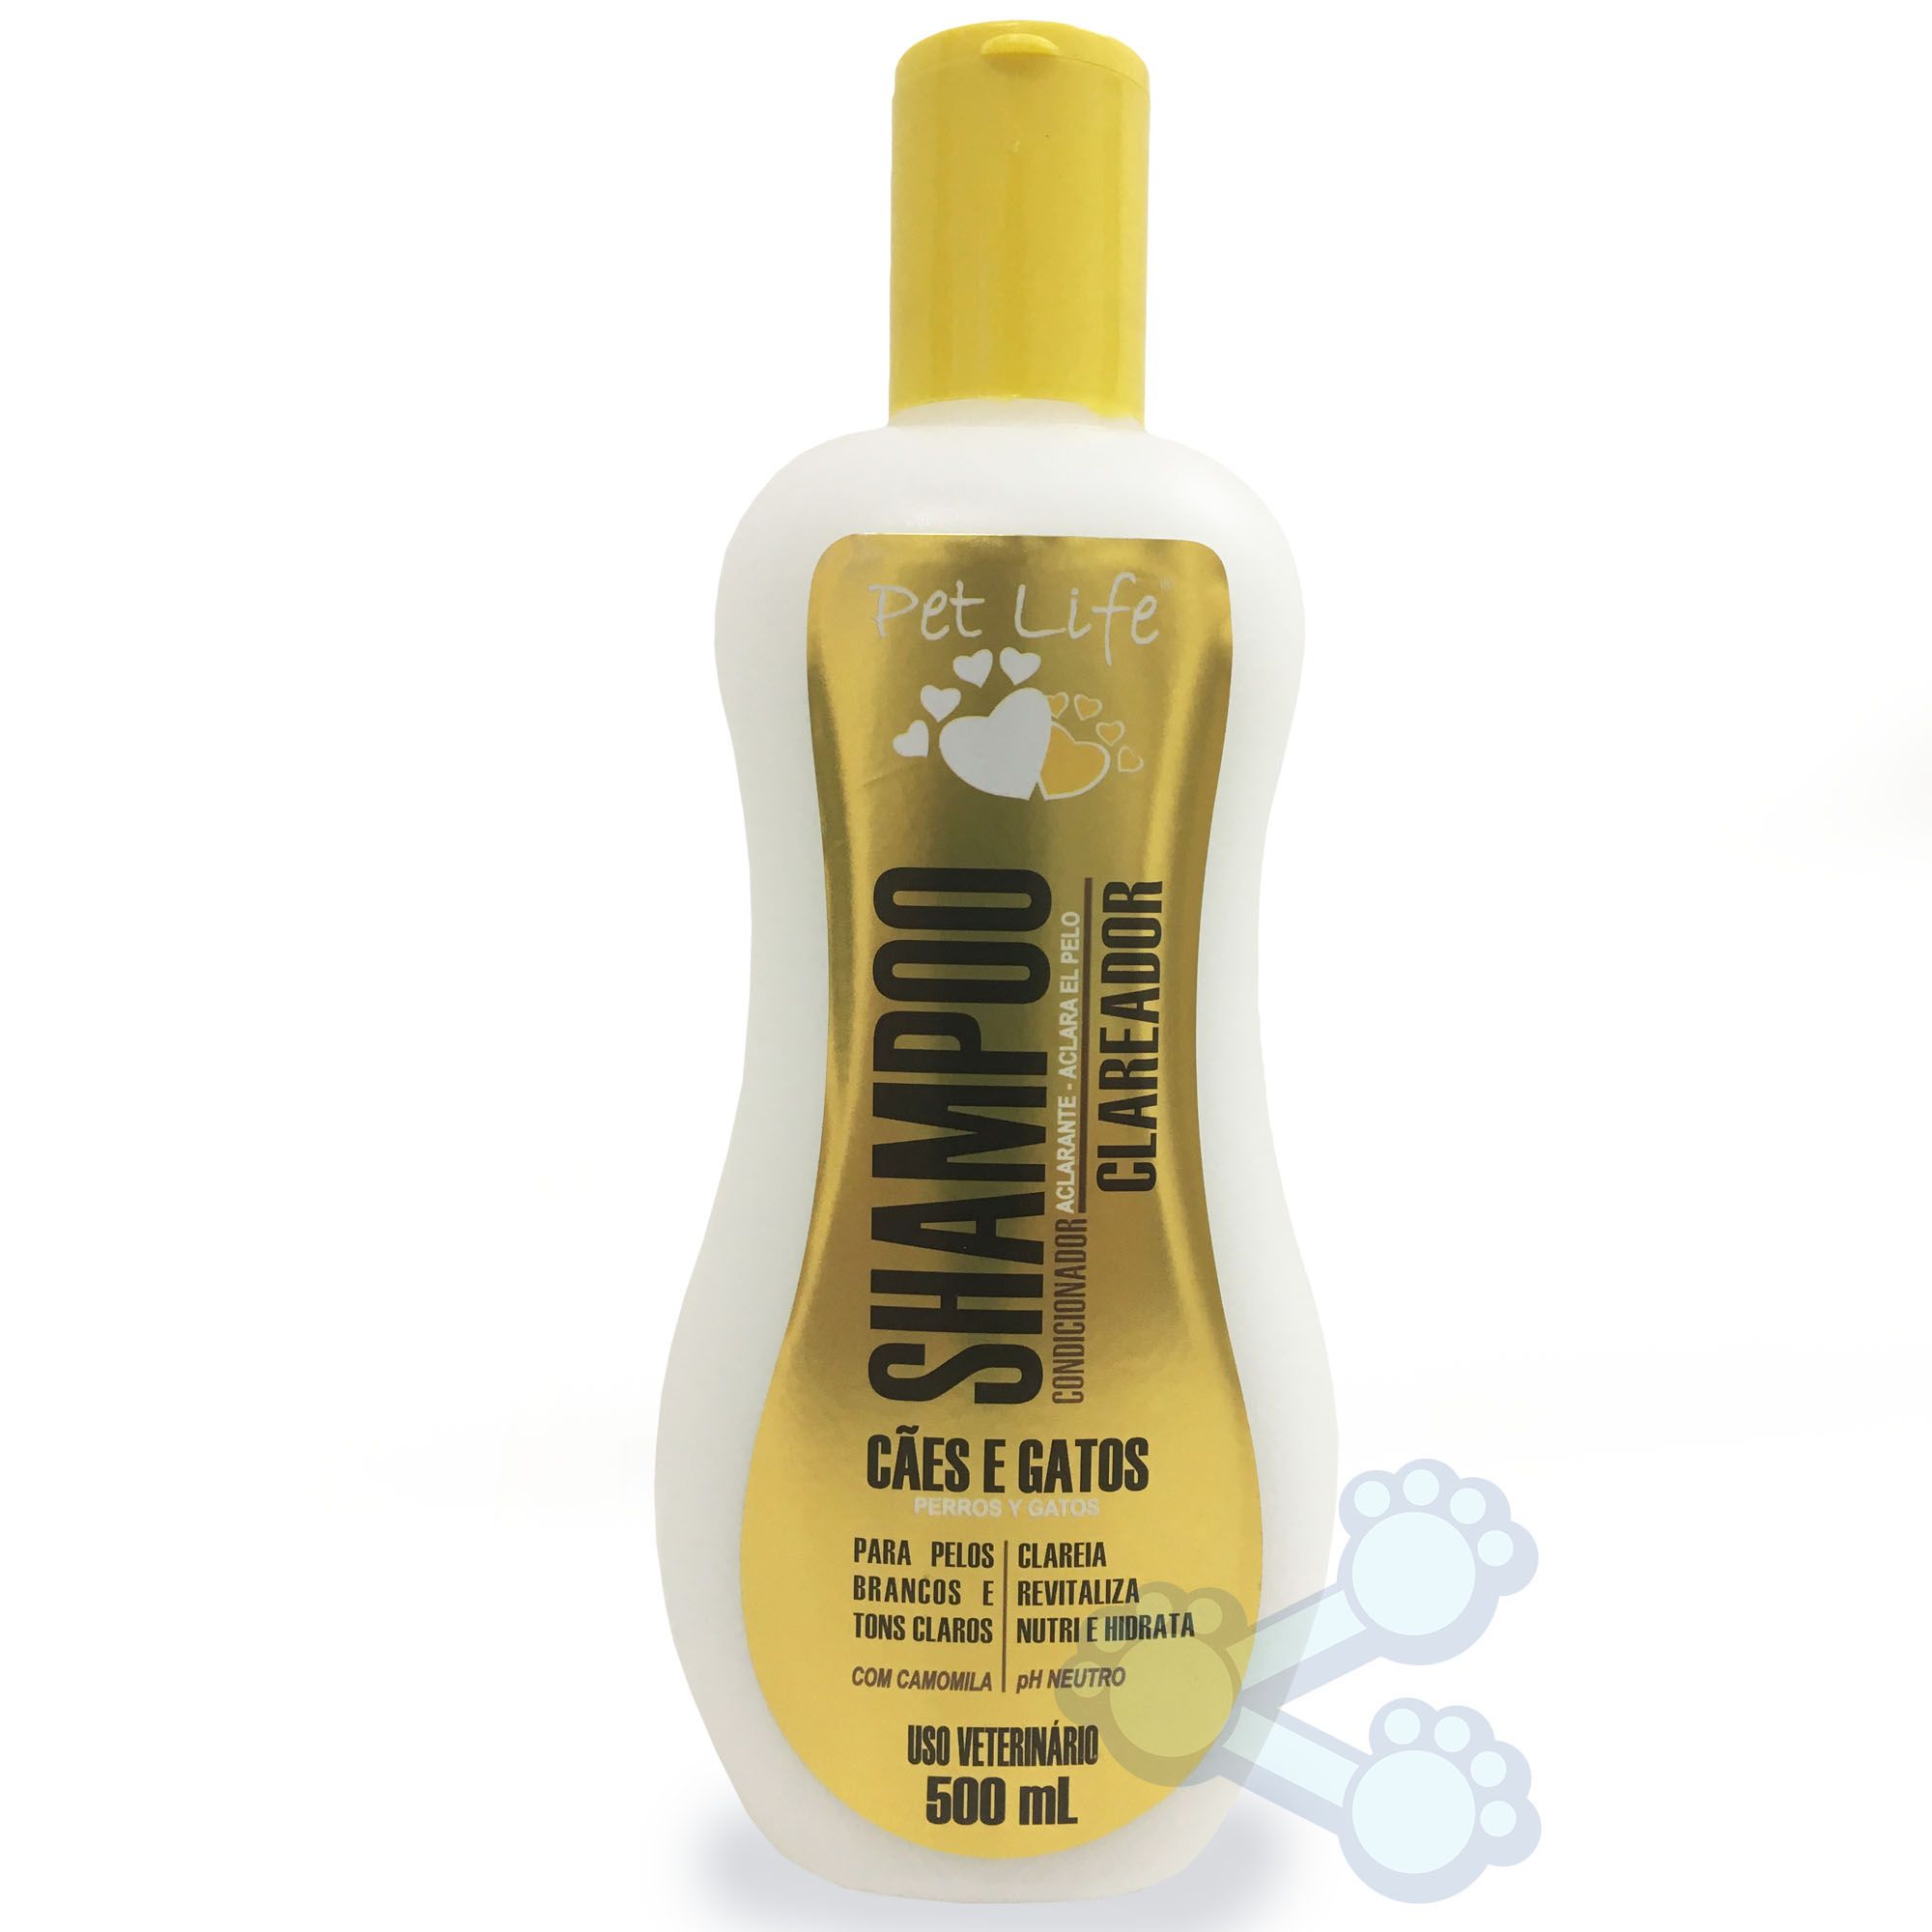 Shampoo Pet Life Clareador (500ml)